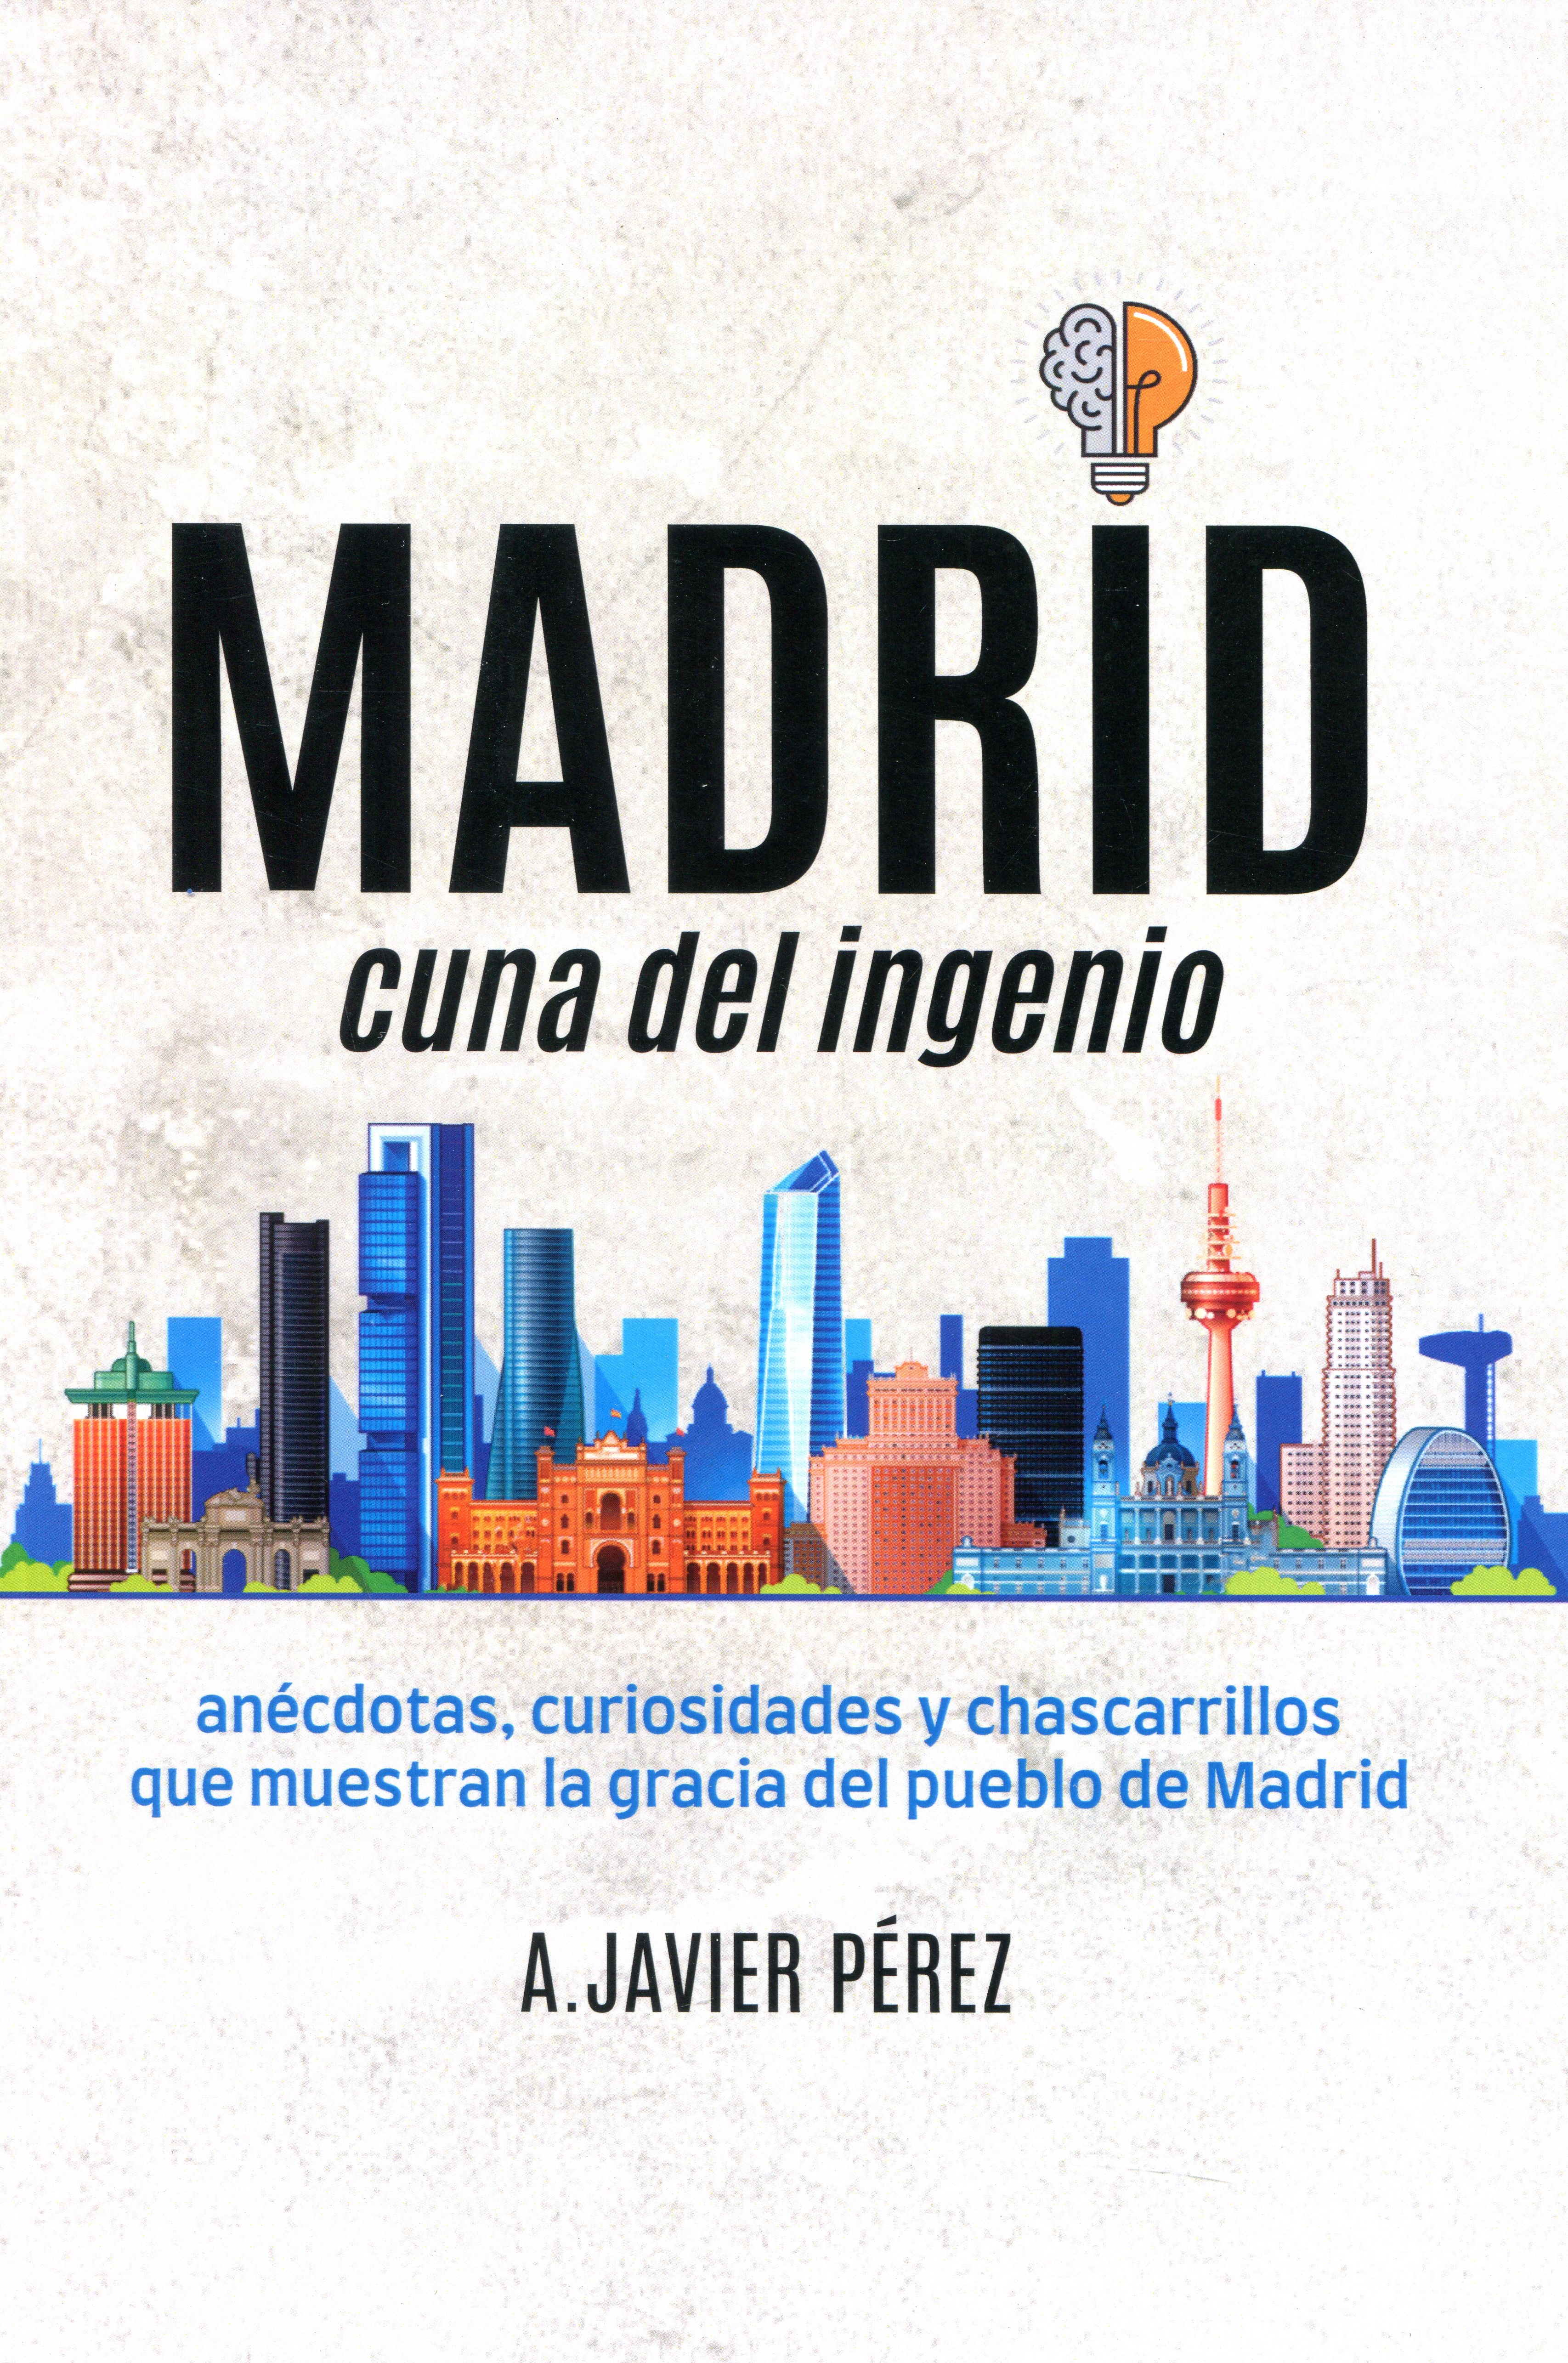 Madrid, cuna del ingenio